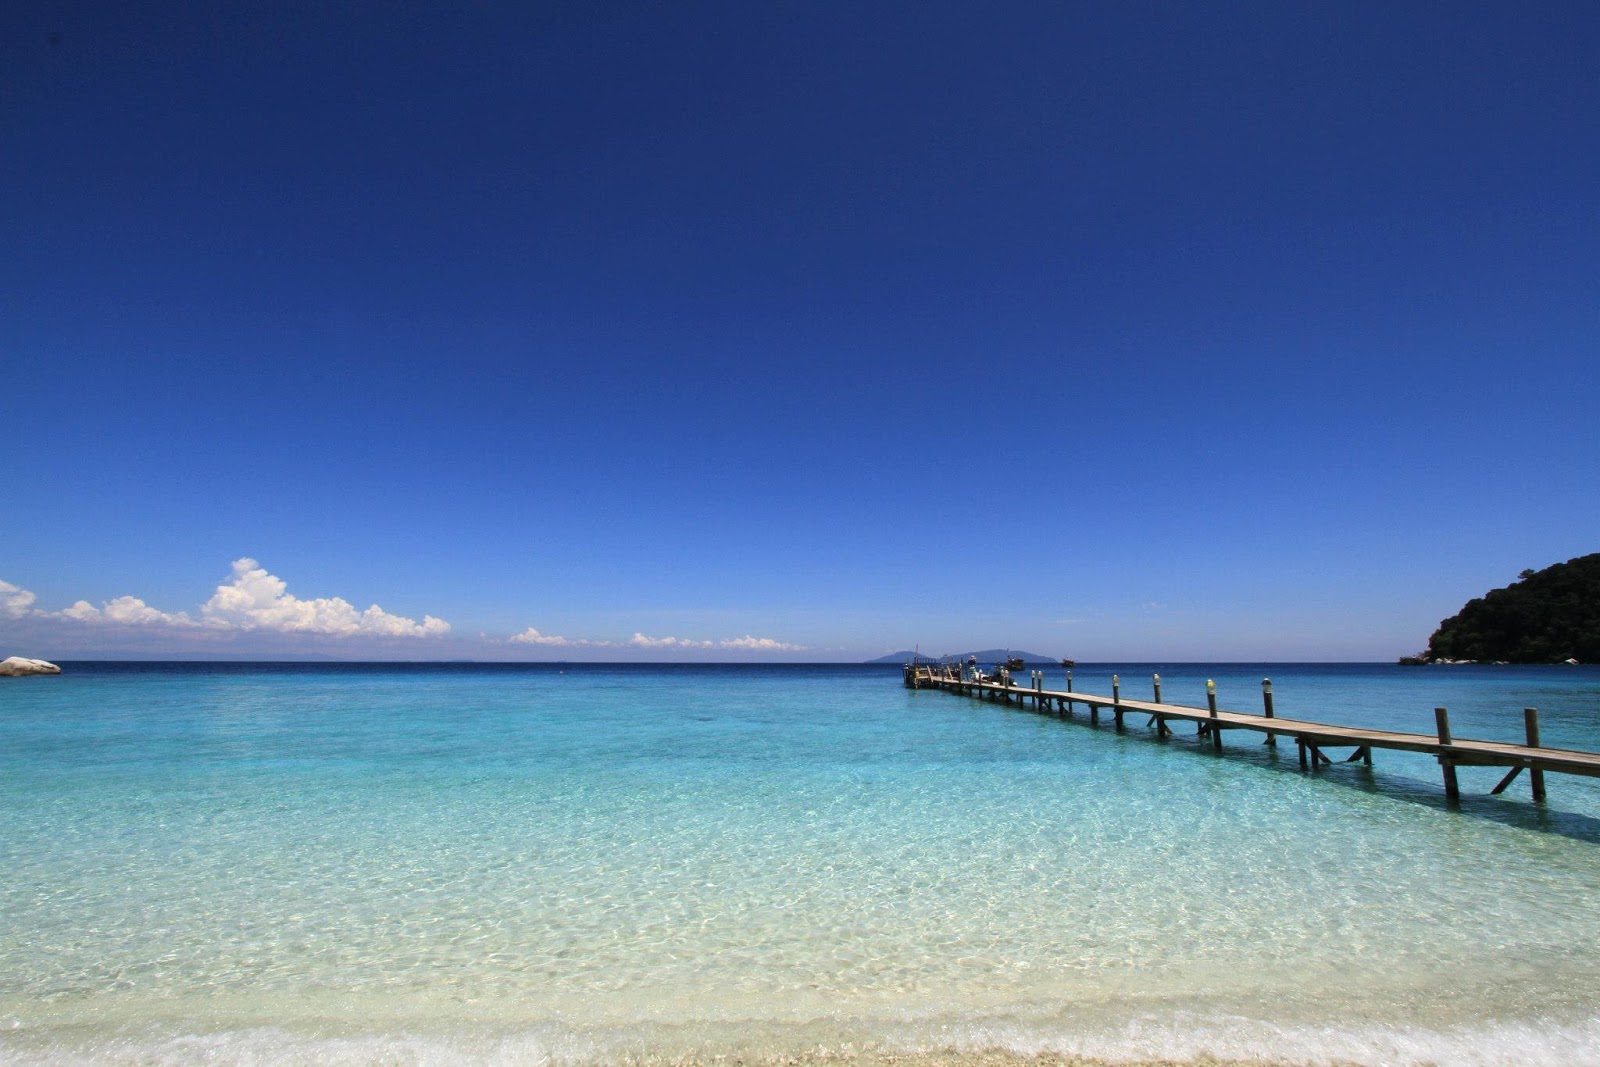 夏日湾度假村海滩的照片 带有碧绿色纯水表面